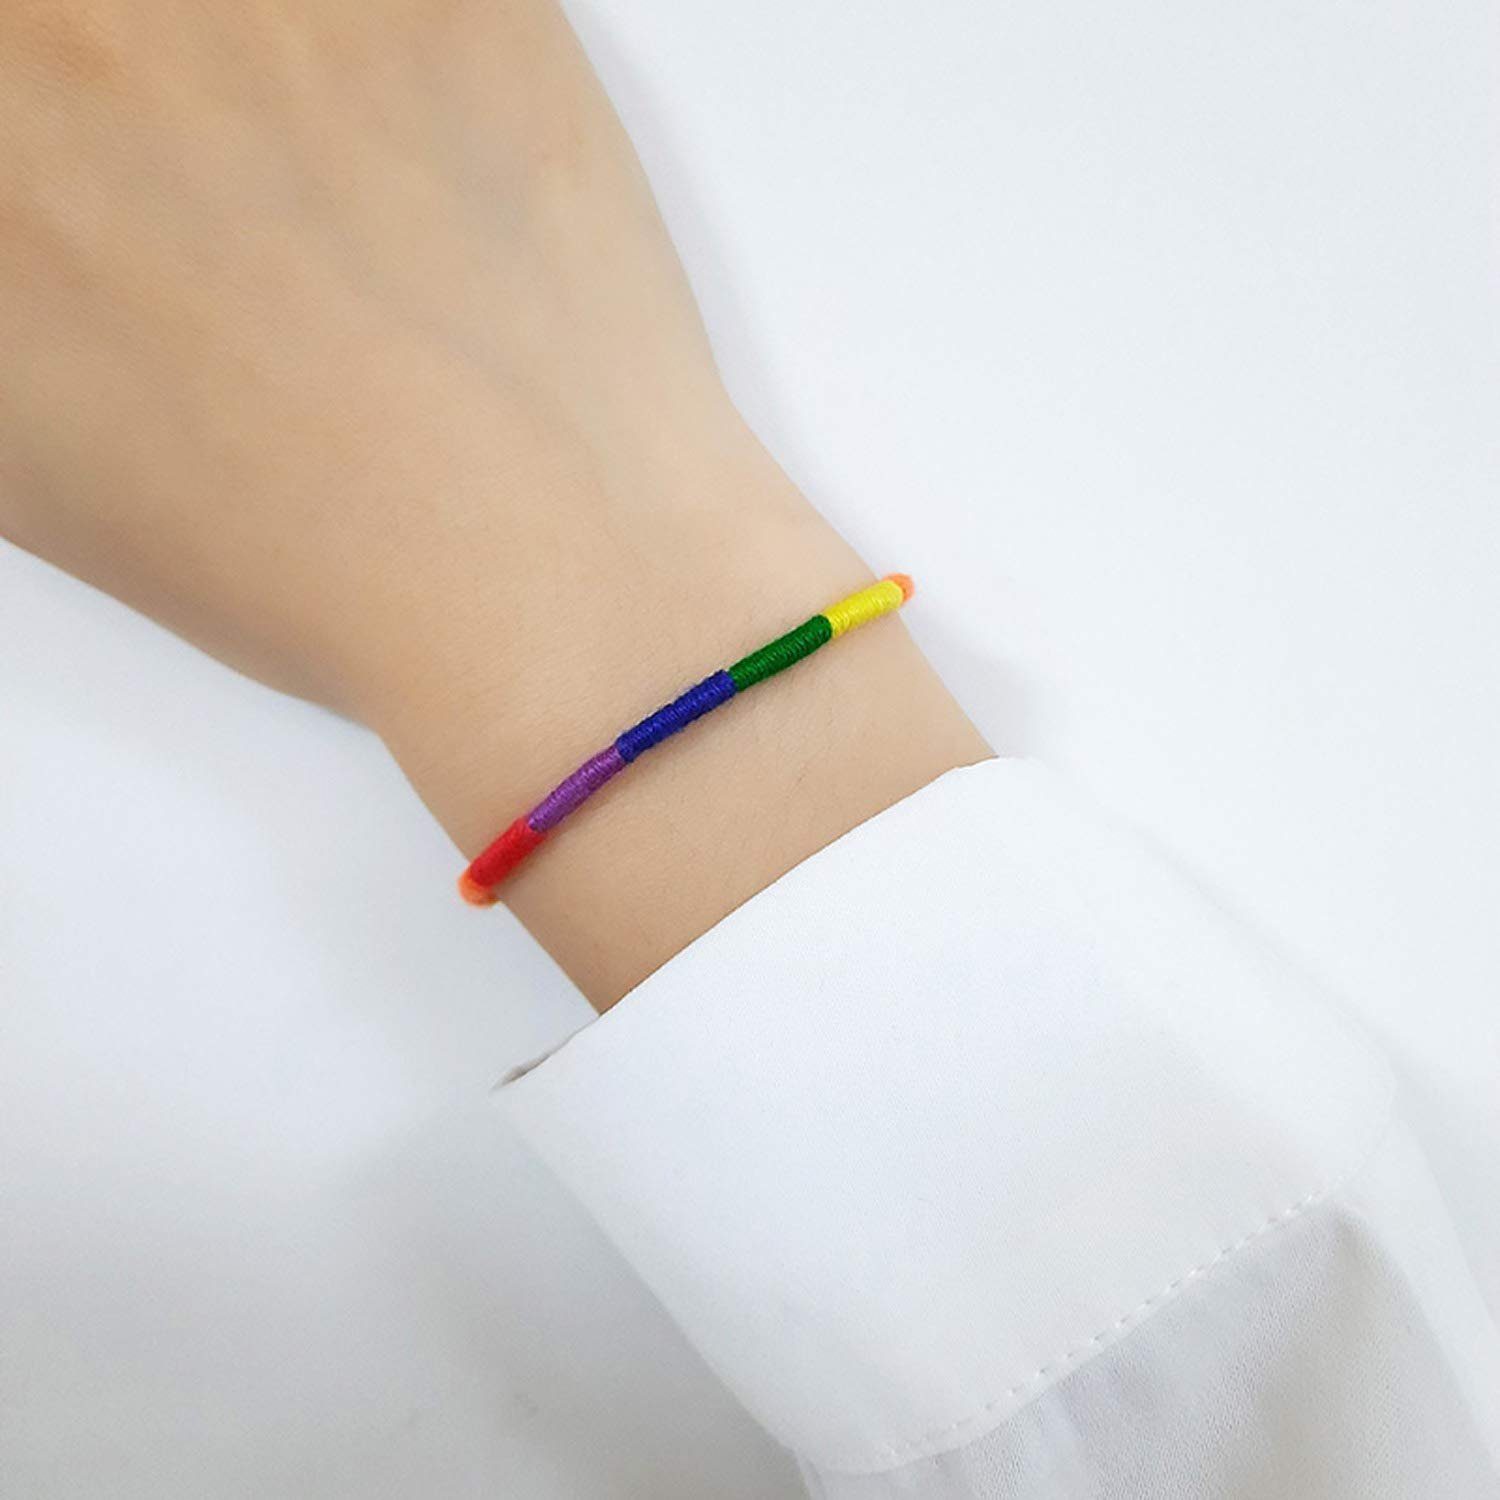 Freundschaftsarmband Regenbogen LGBTQ Seil 2Pcs Haiaveng Armbänder, geflochtenes Freundschaftsarmband Gewebtes einstellbar